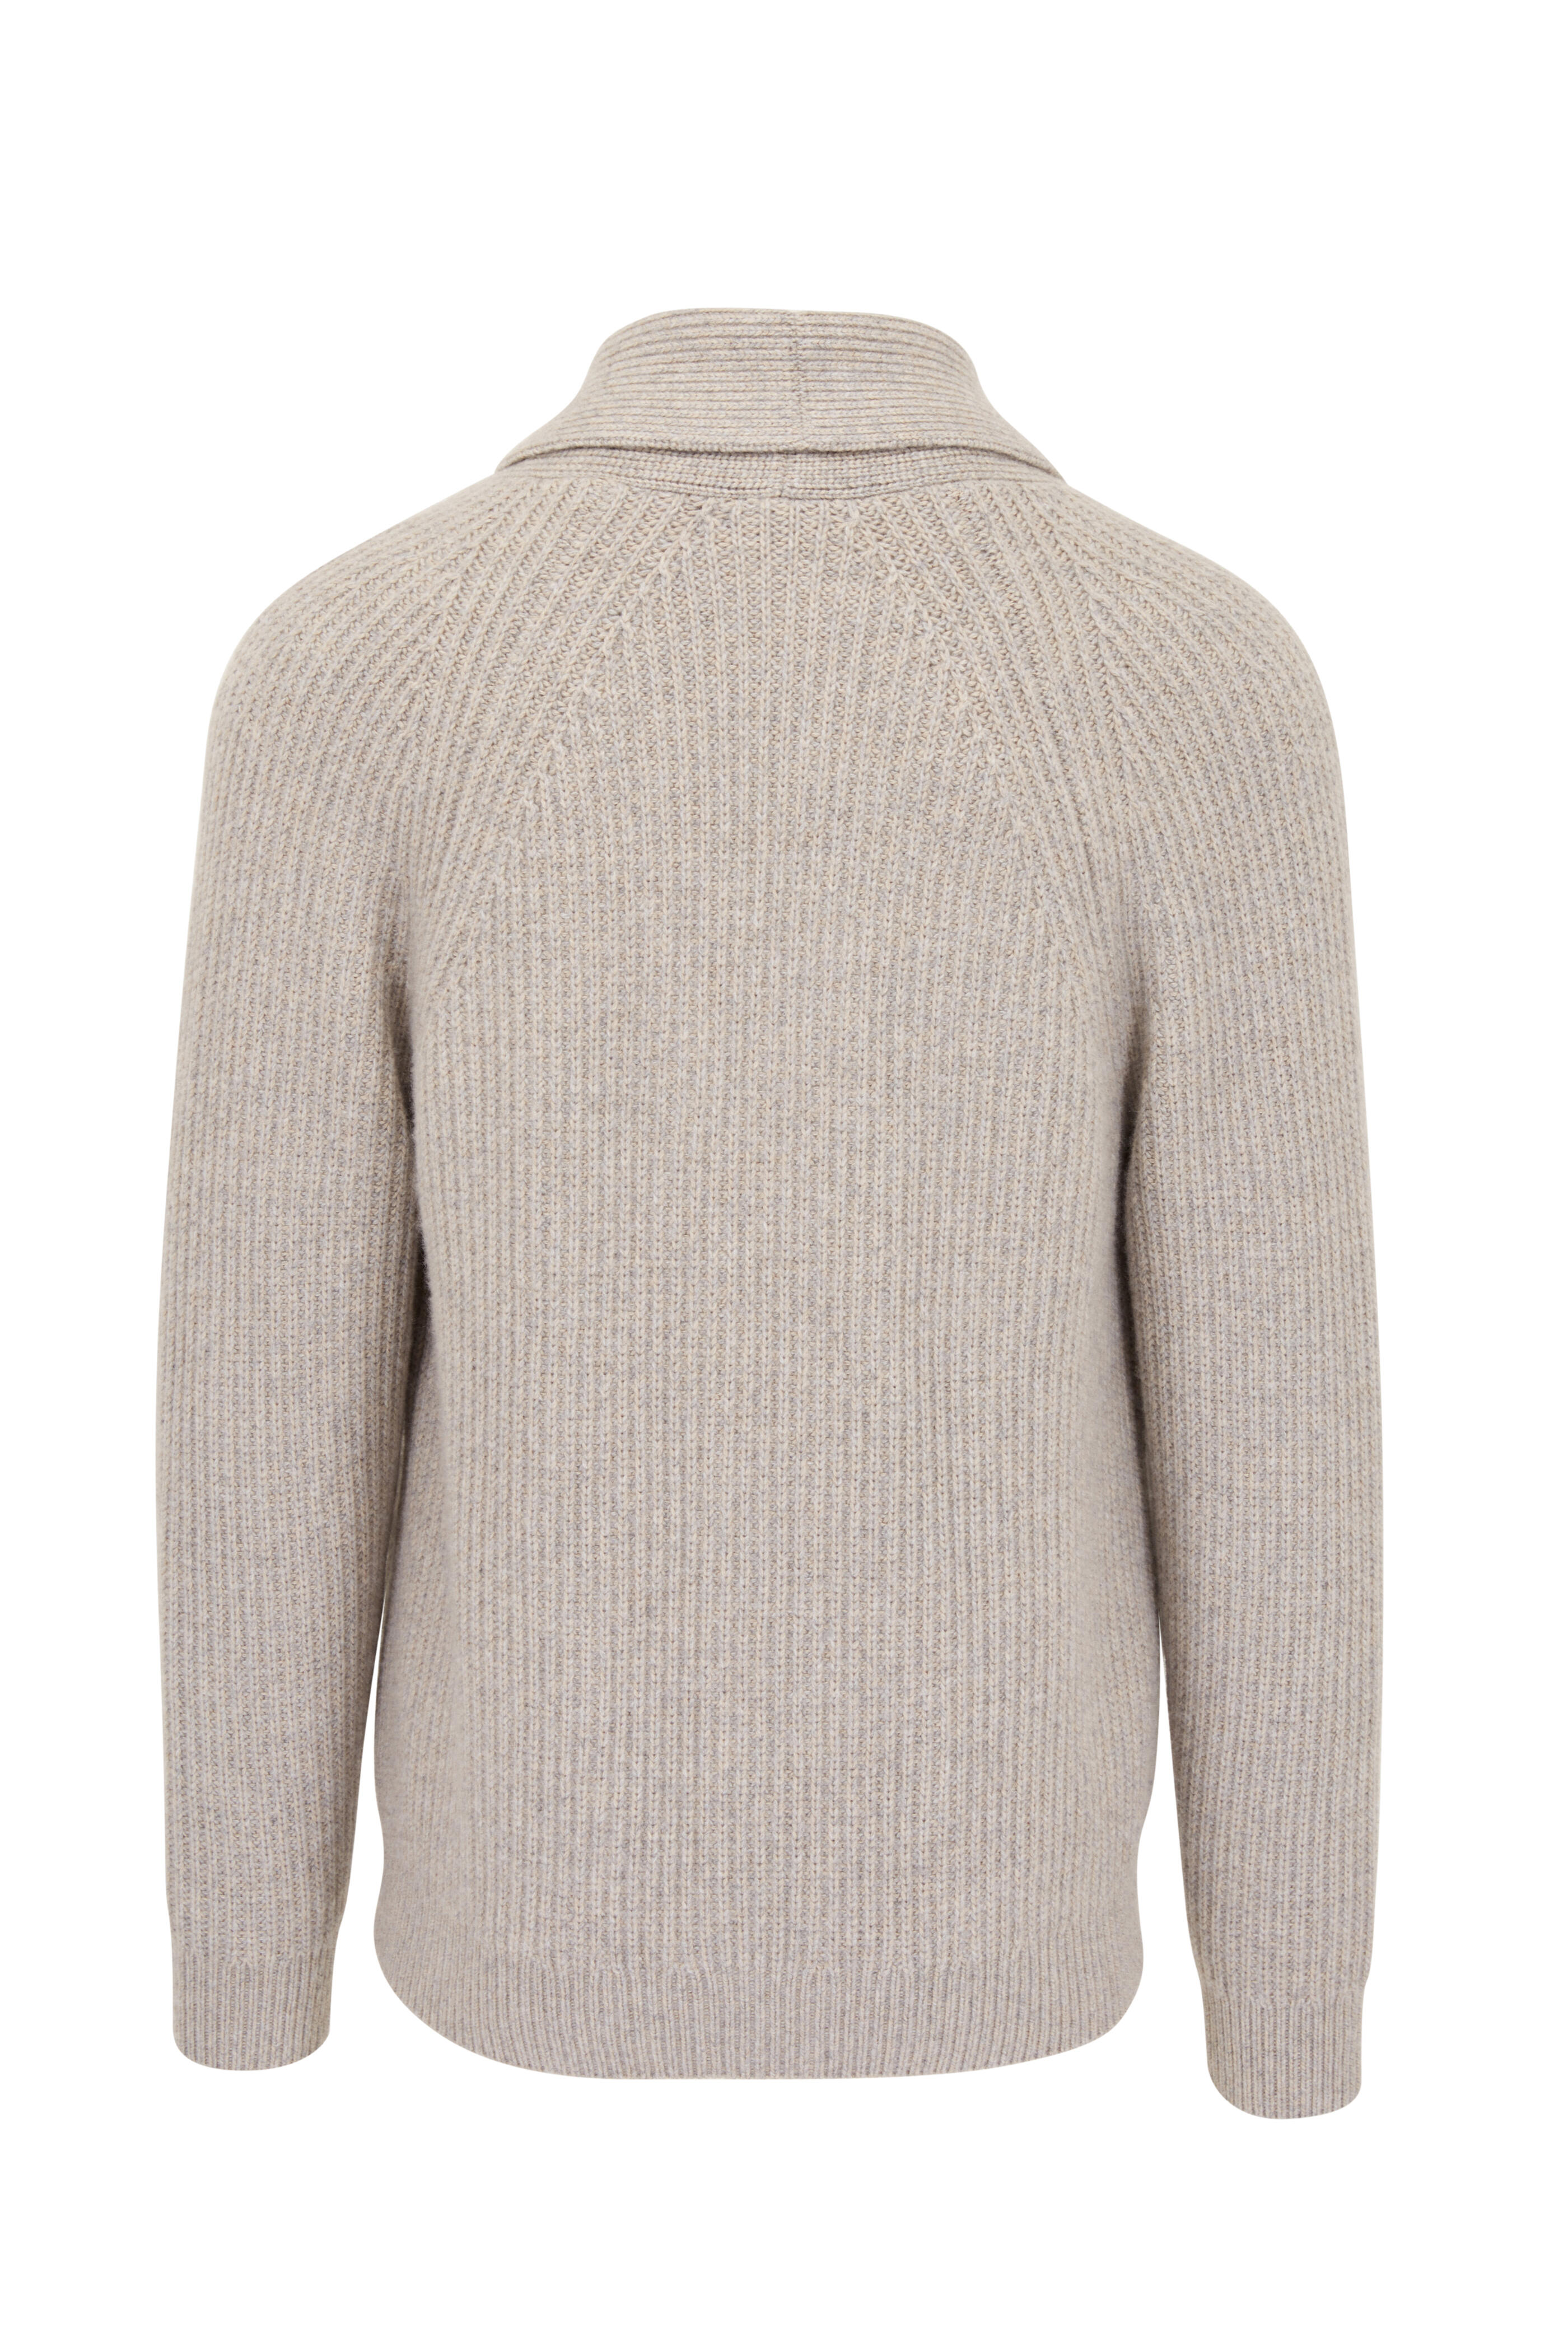 Vuittamins Two-Tone Sweater - Luxury Knitwear - Ready to Wear, Women  1A9254